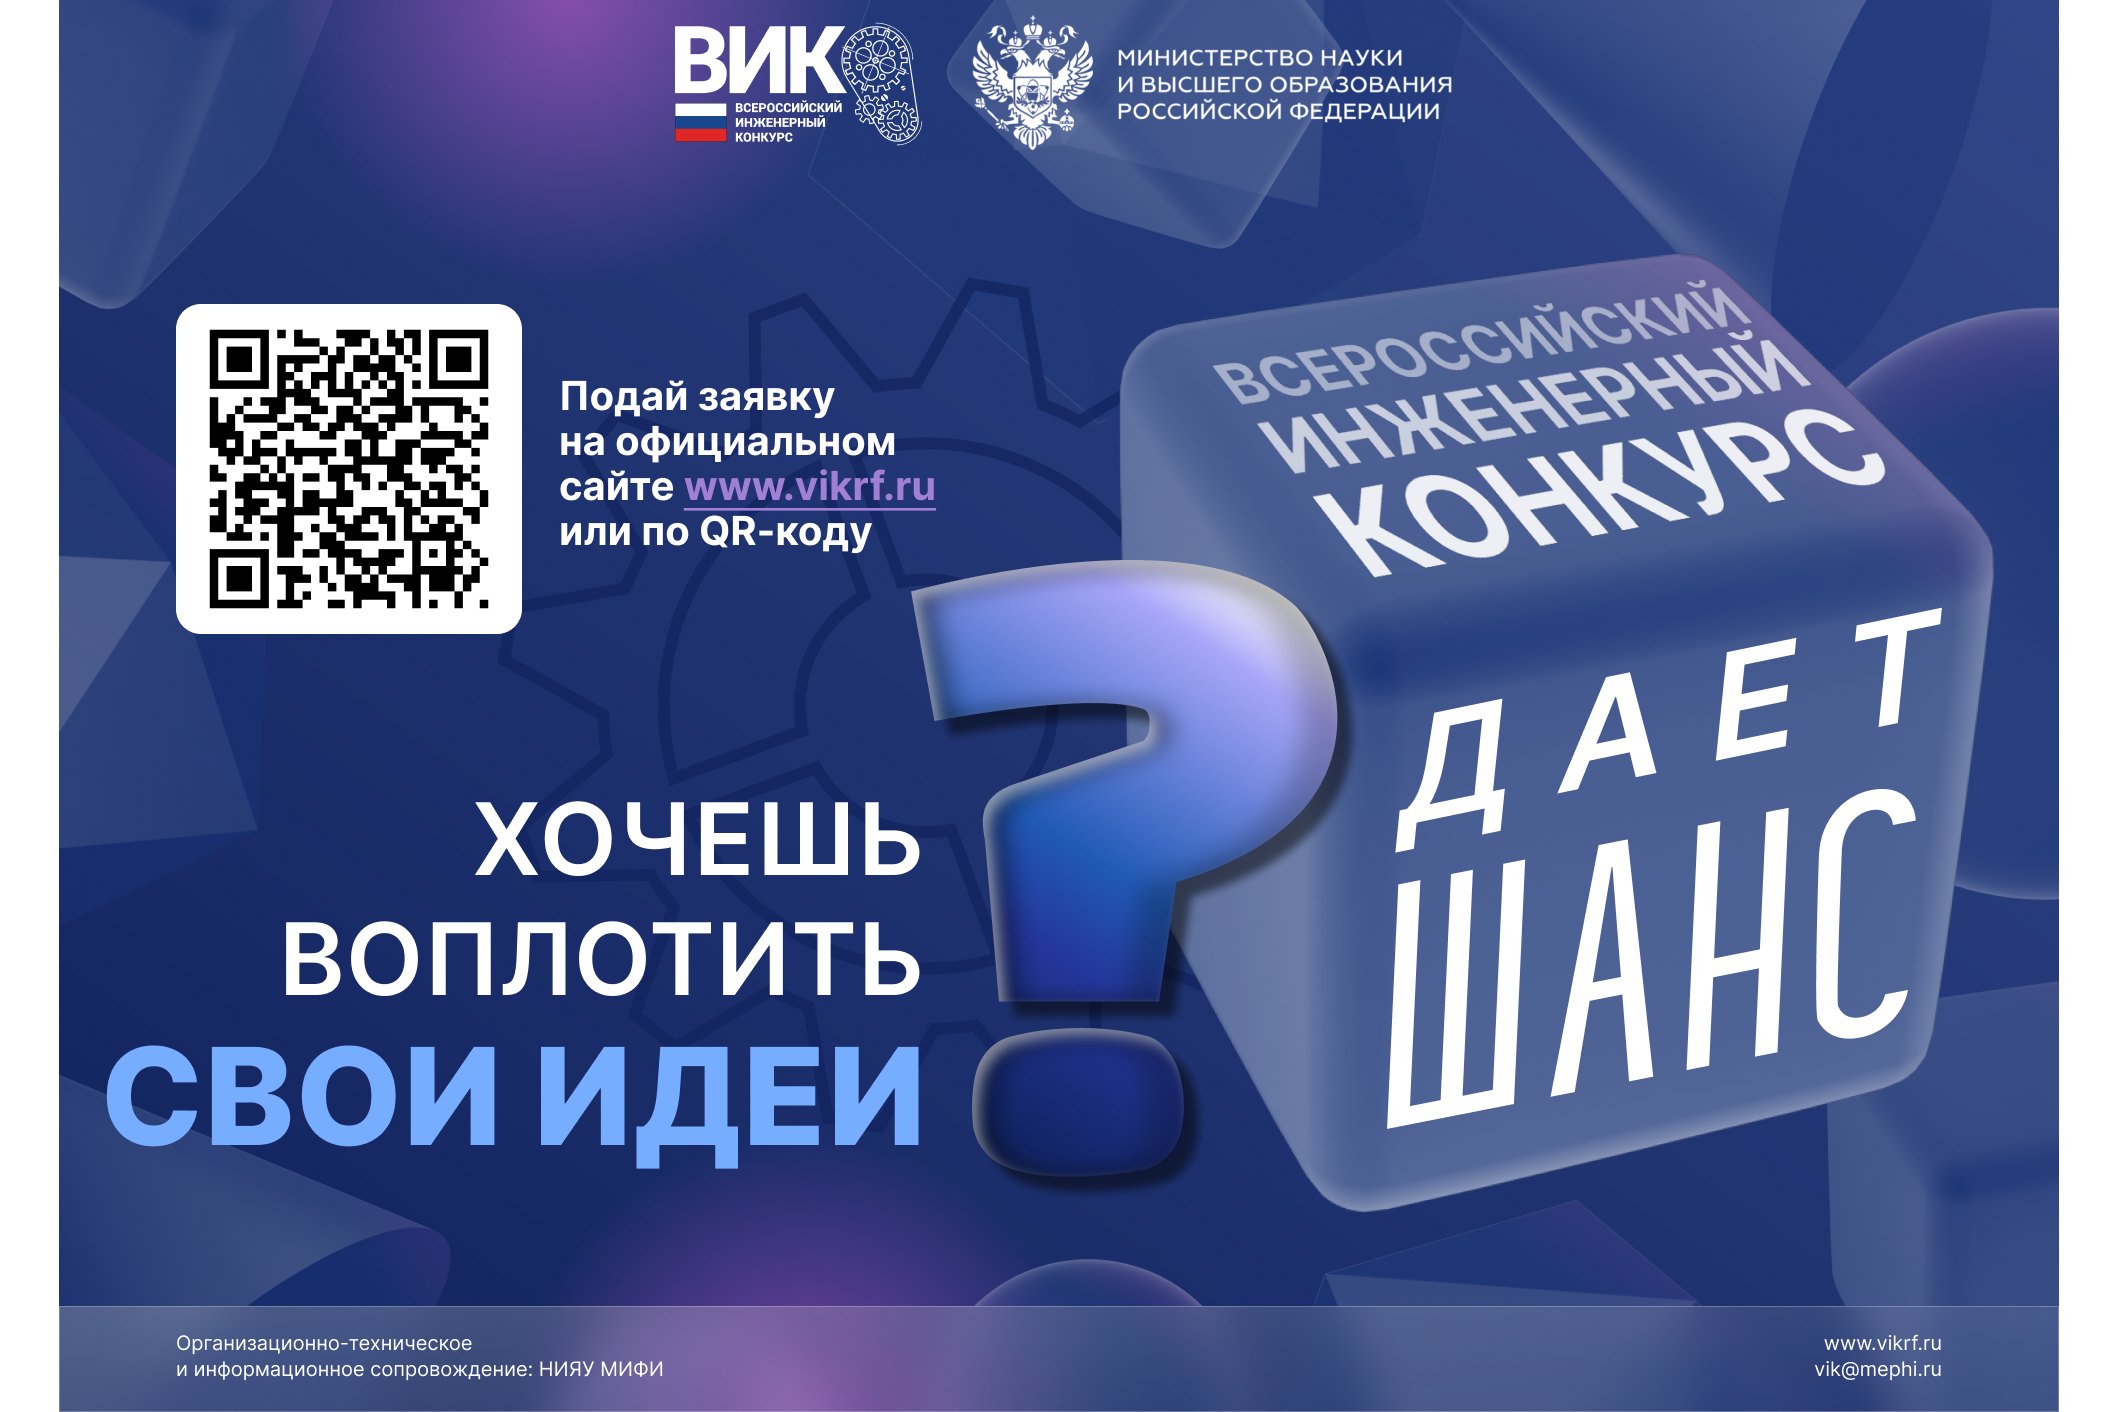 Старшекурсники Мининского университета могут принять участие во Всероссийском инженерном конкурсе